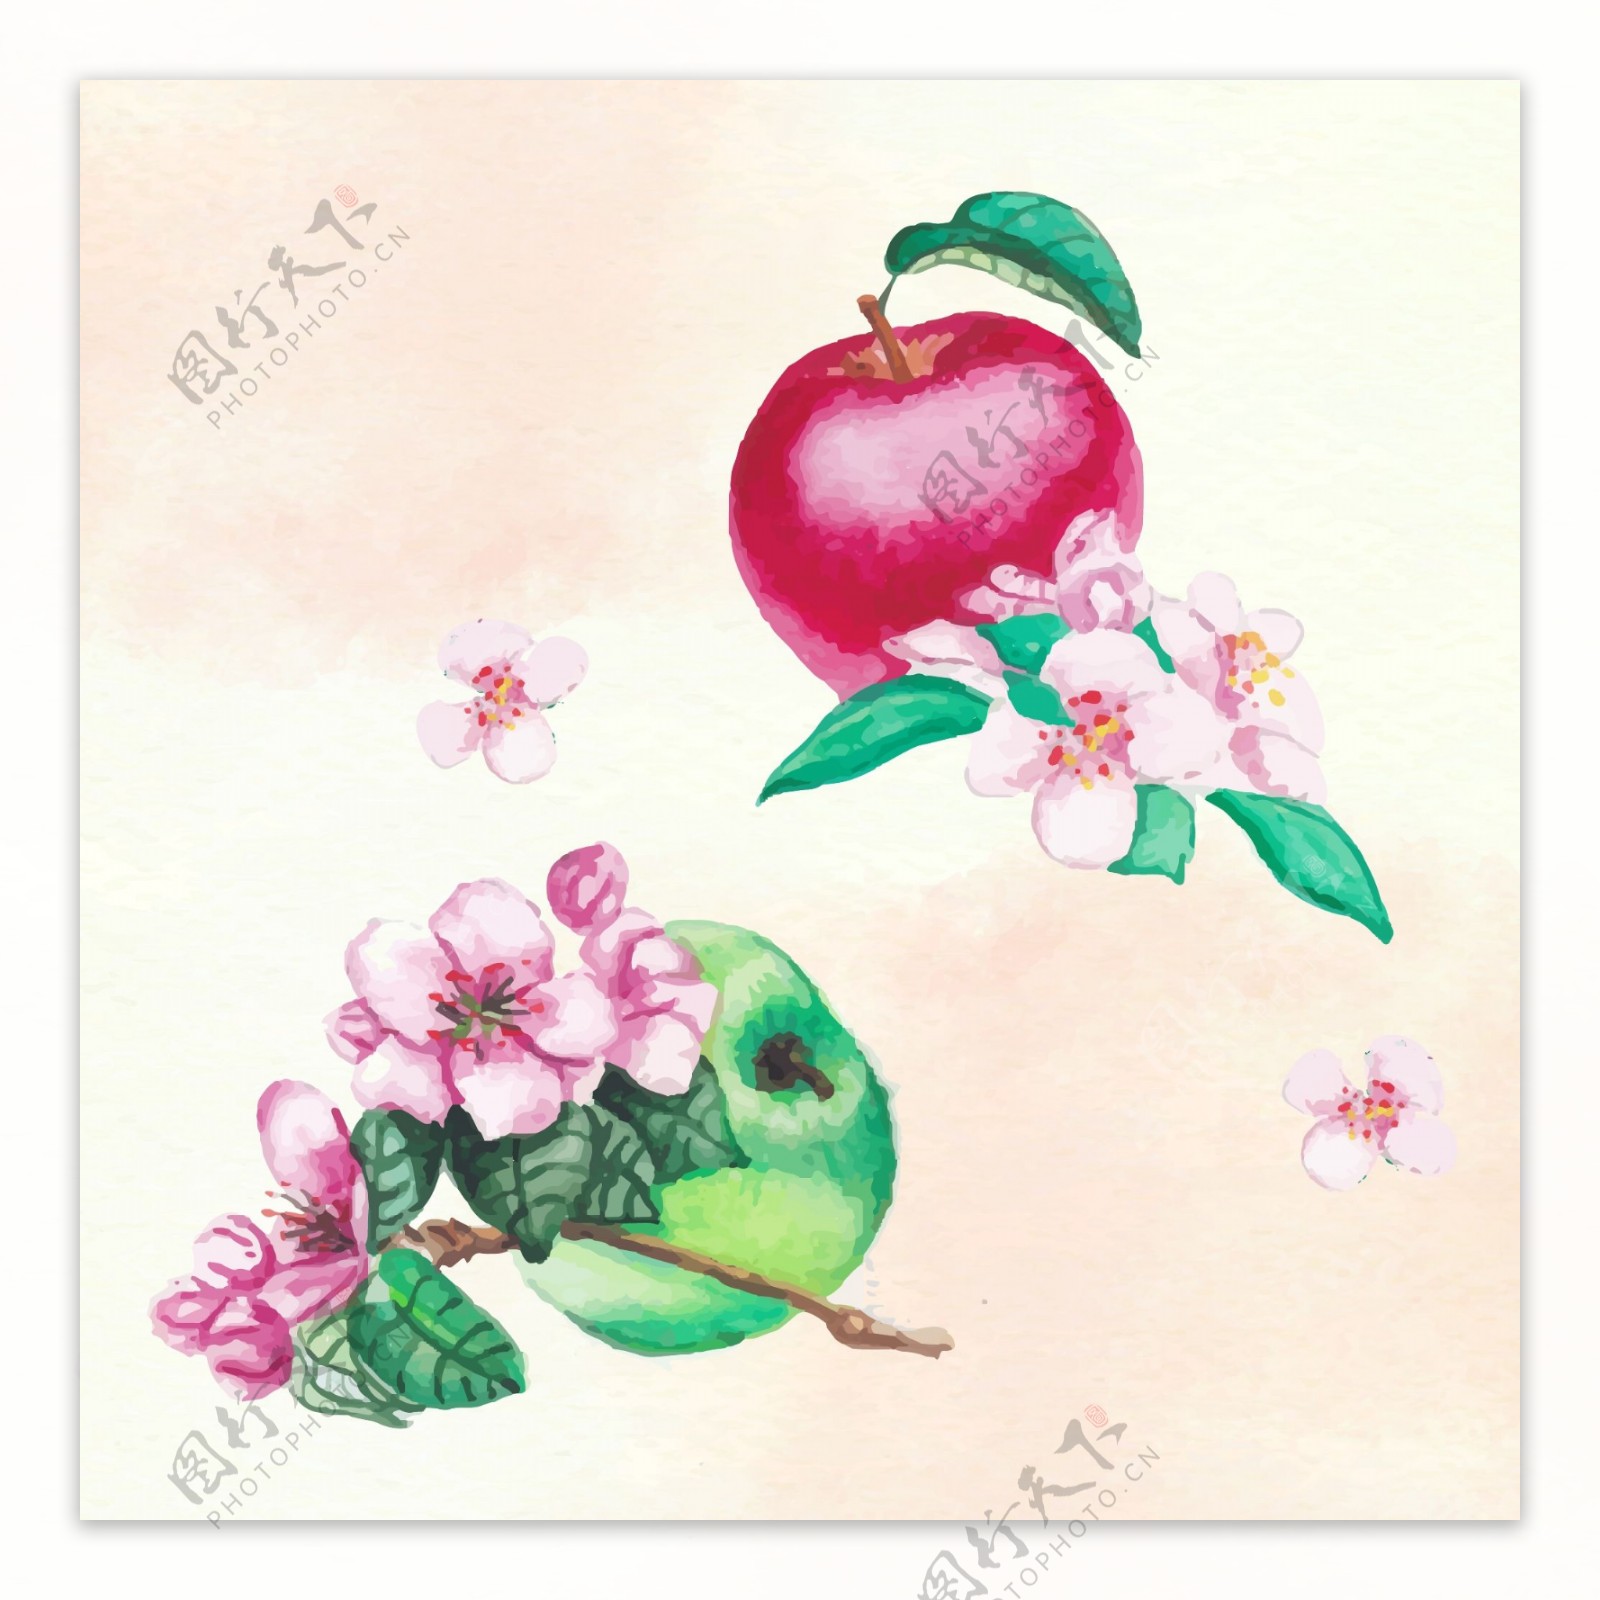 手绘水彩苹果插图